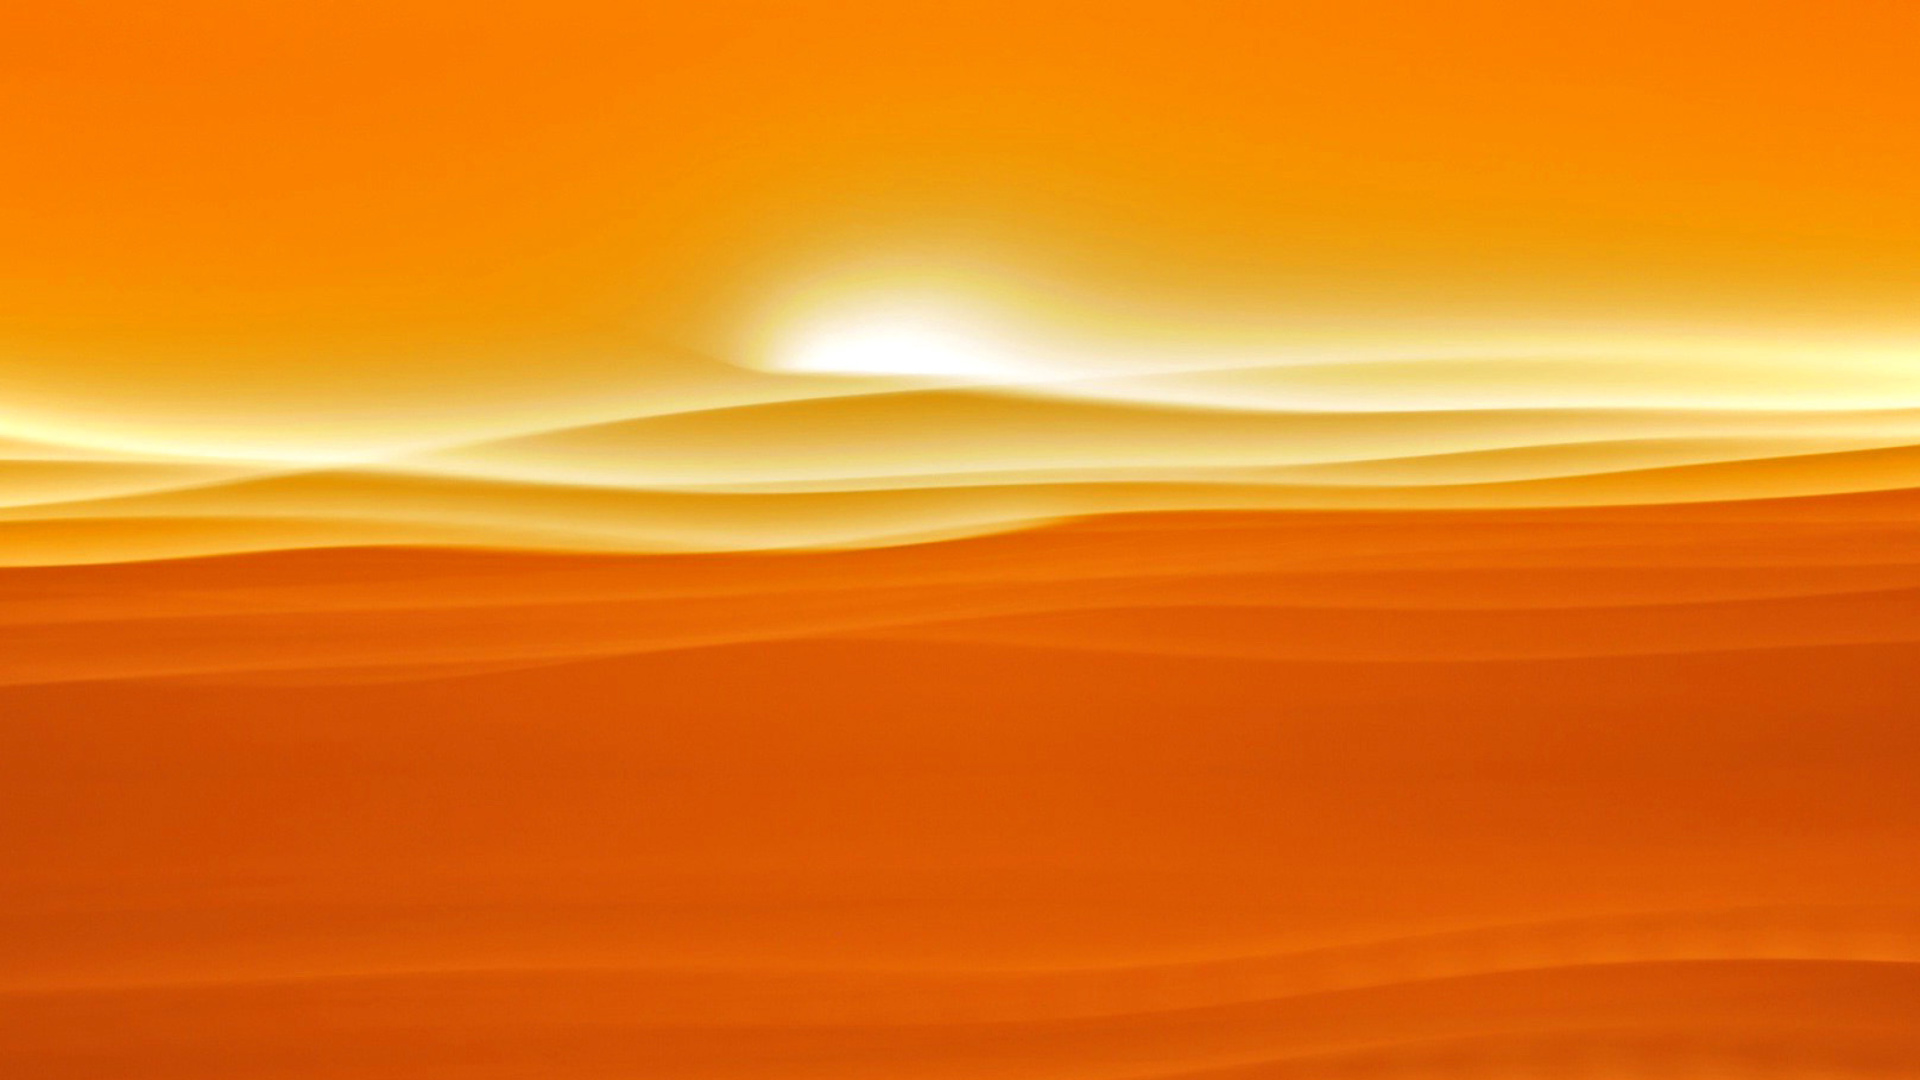 Обои Orange Sky and Desert 1920x1080